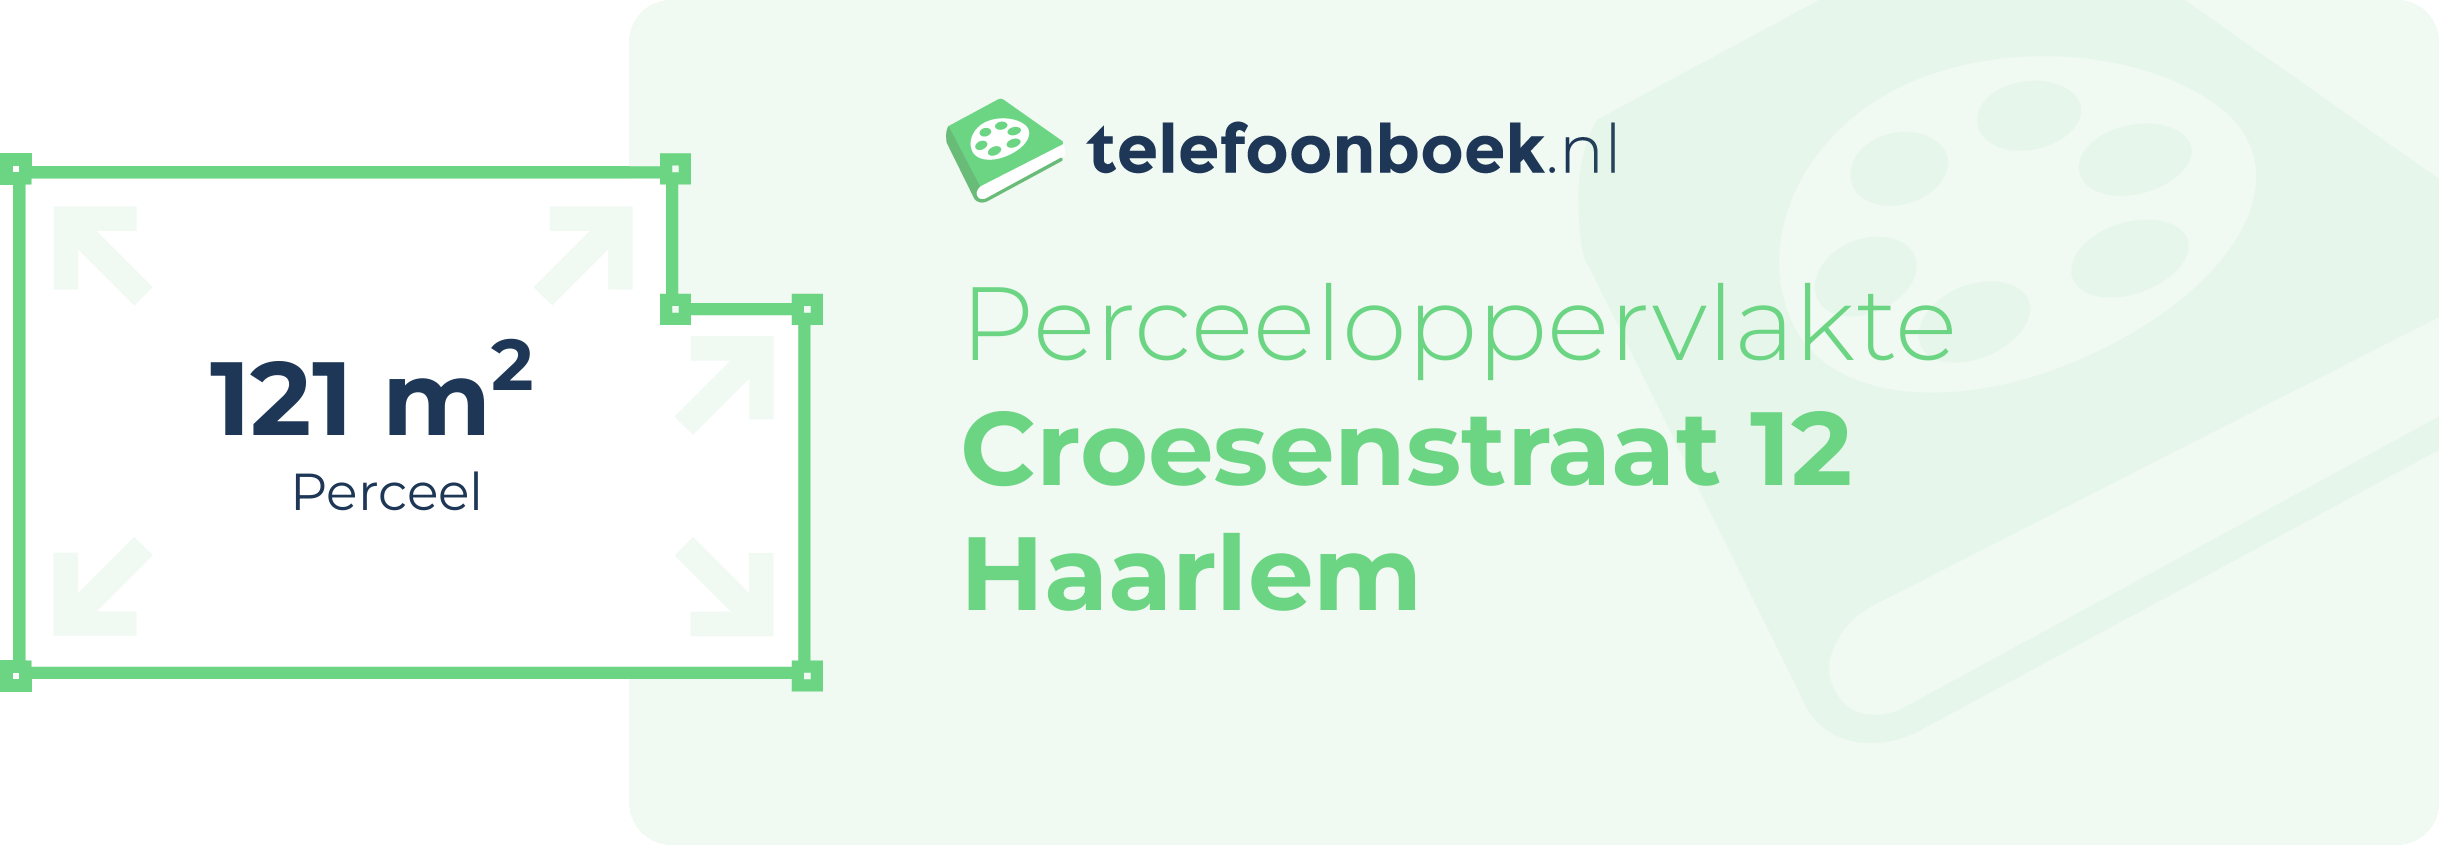 Perceeloppervlakte Croesenstraat 12 Haarlem